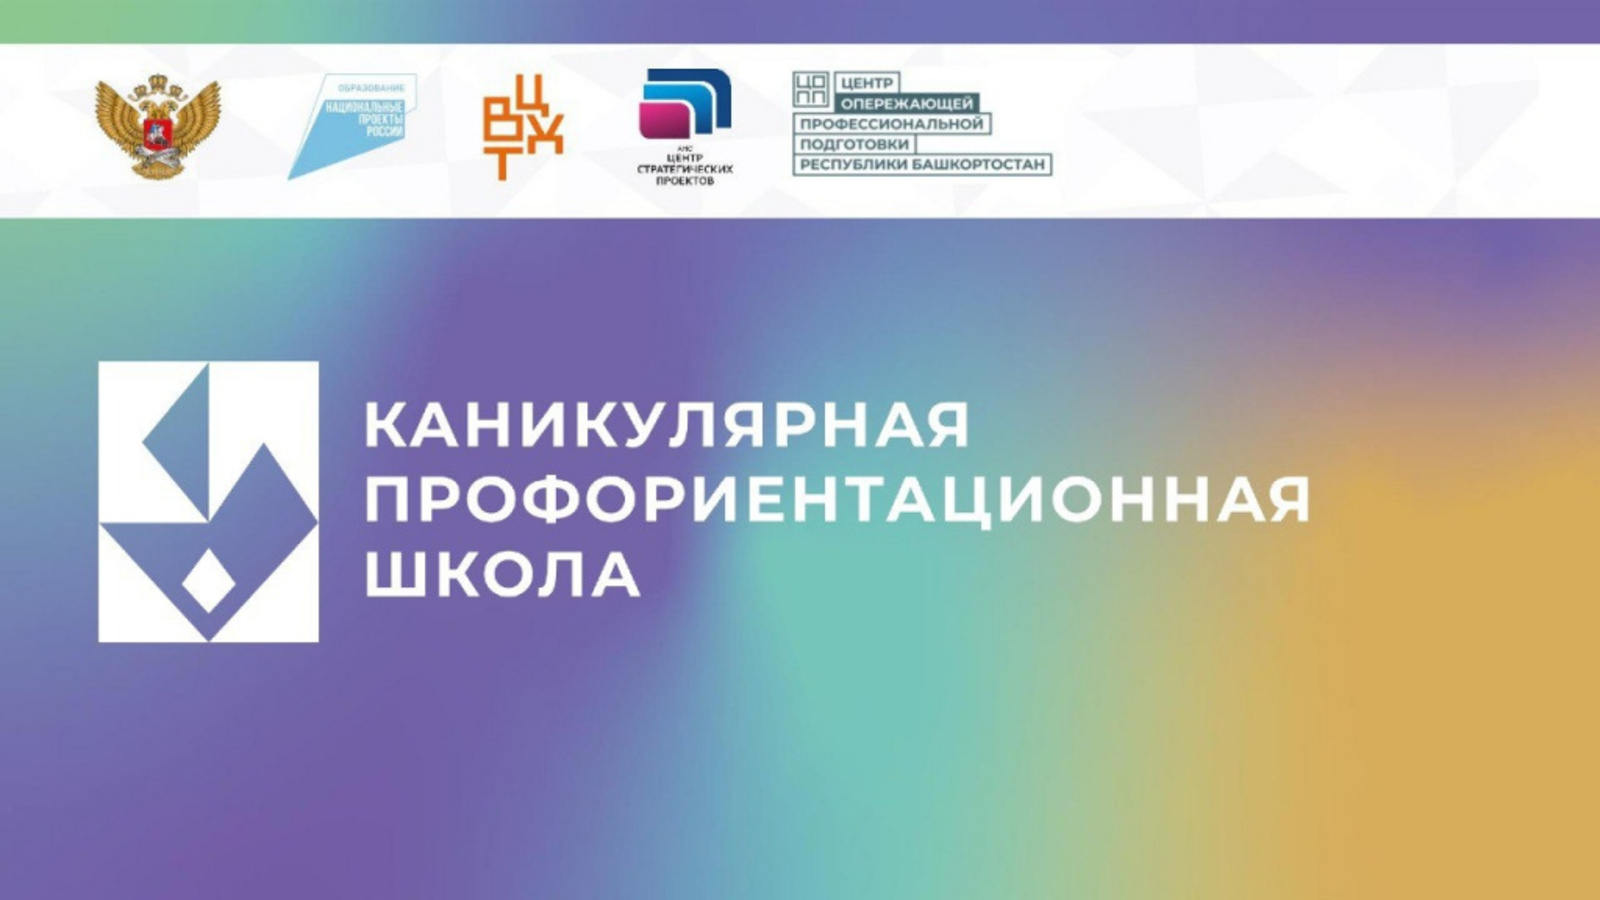 В Башкортостане стартовал федеральный проект «Каникулярные профориентационные школы»